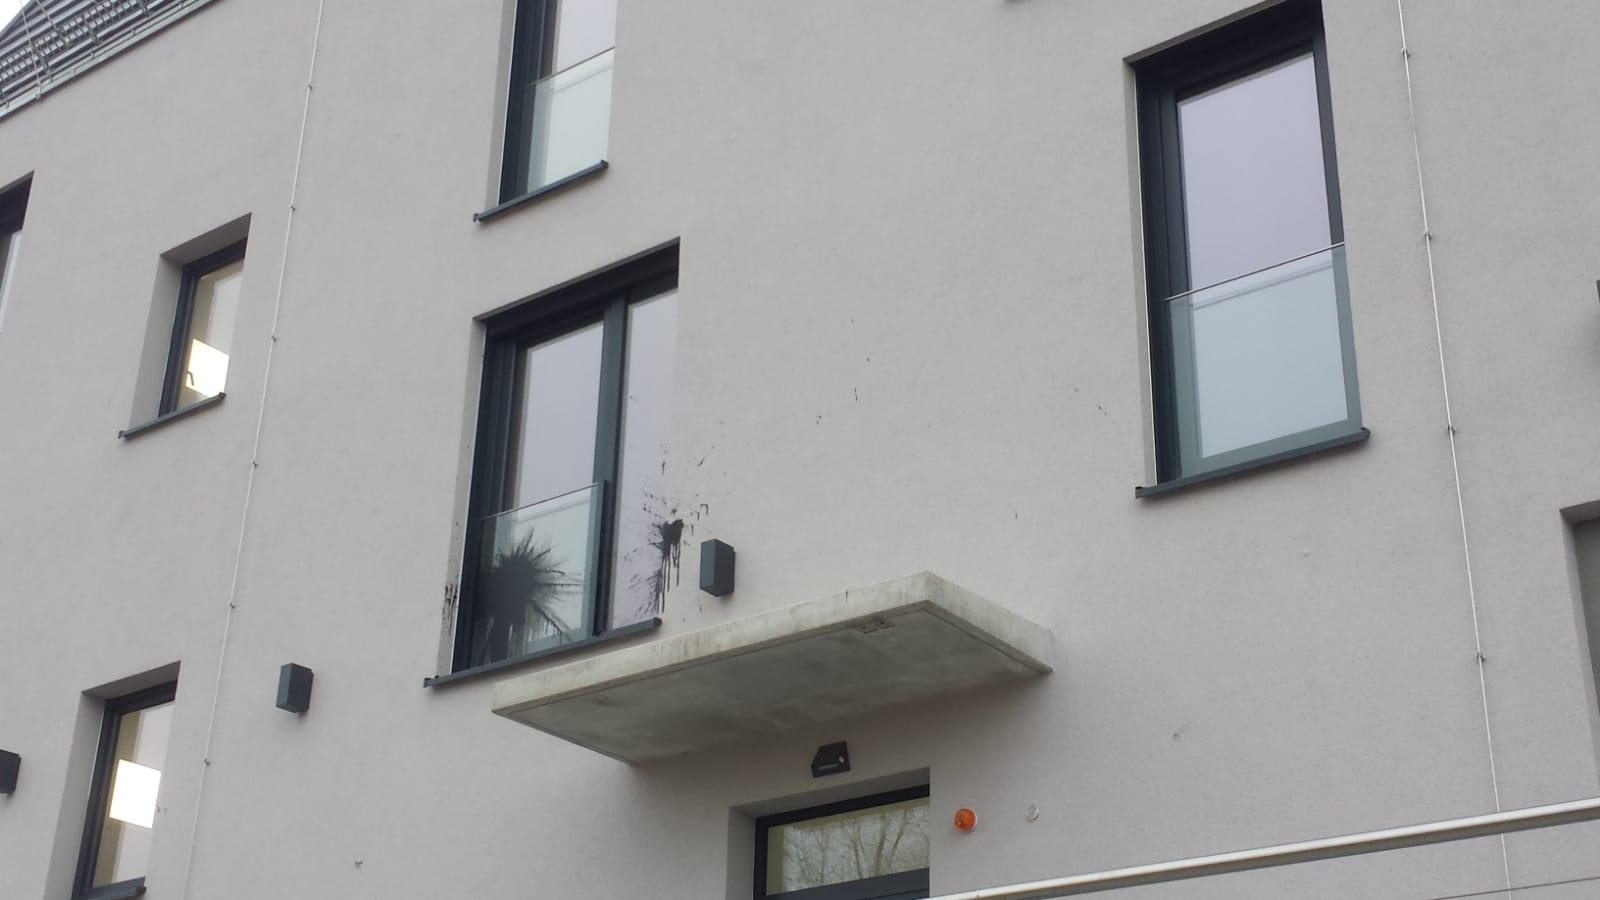 Farb-Stein Attacke auf ein Arcotel-Gebäude   Foto: MeiDresden.de